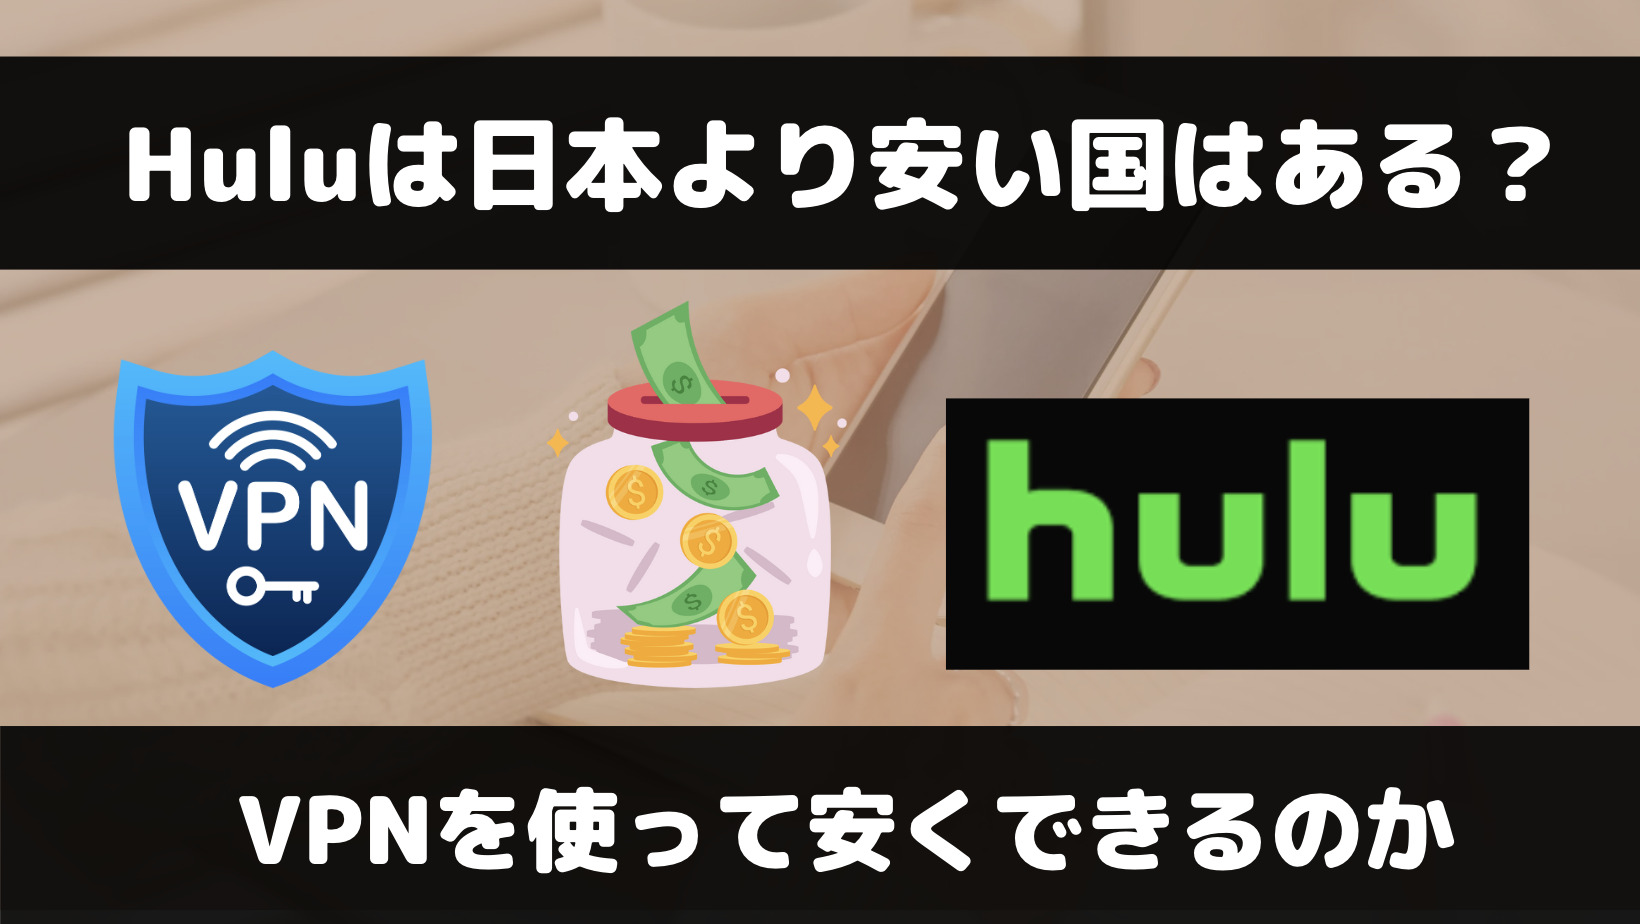 HuluはVPNを使えば料金を安くできる？